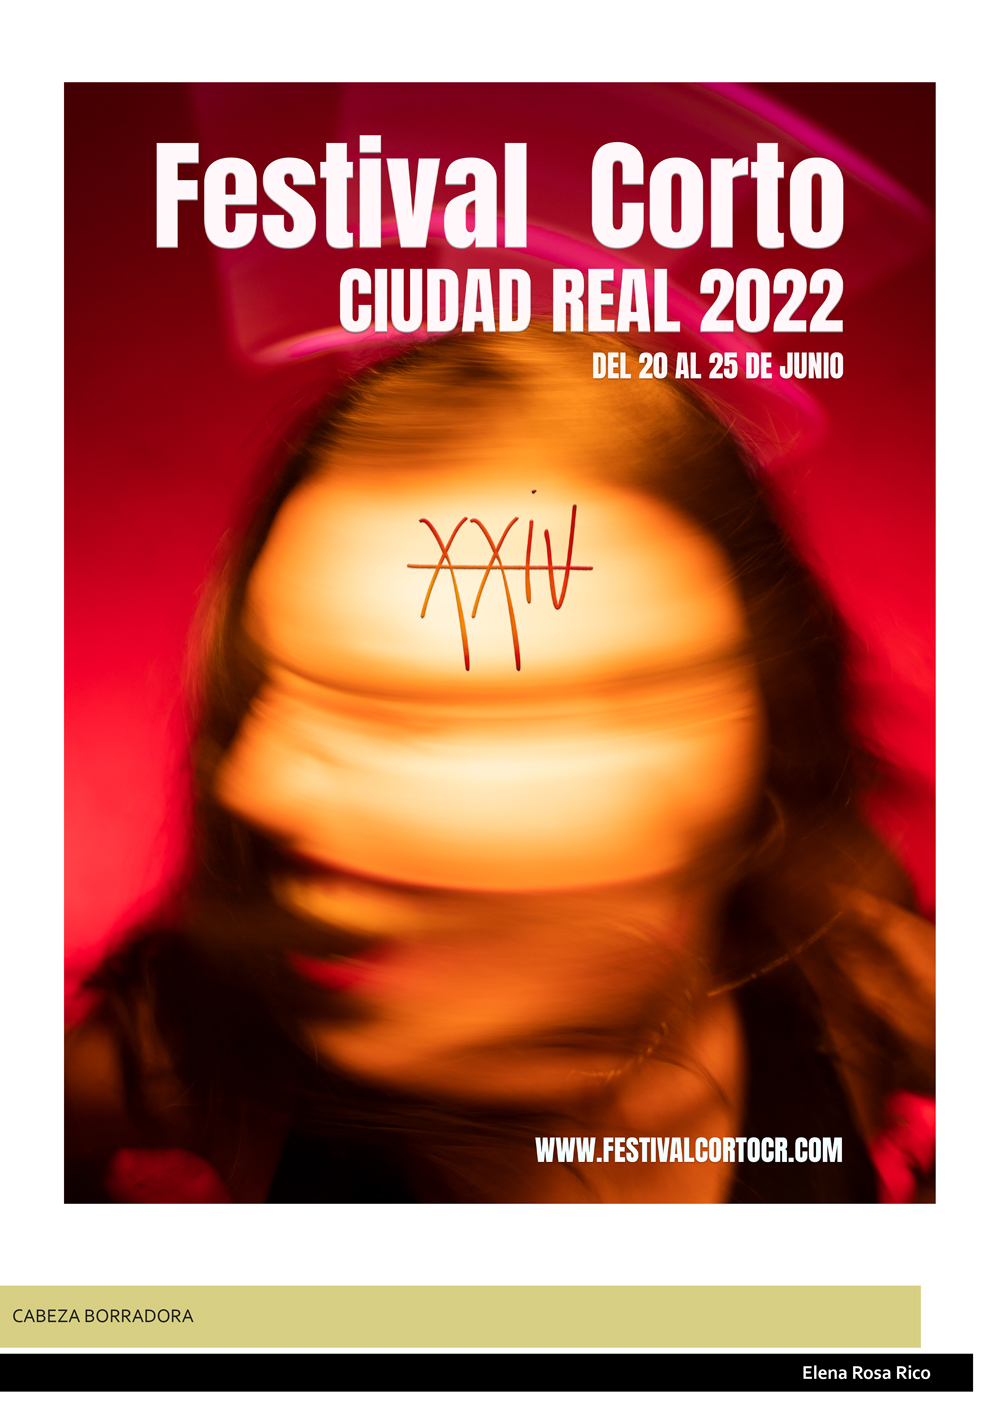 Cartel ganador 2022 - Festival Corto Ciudad Real